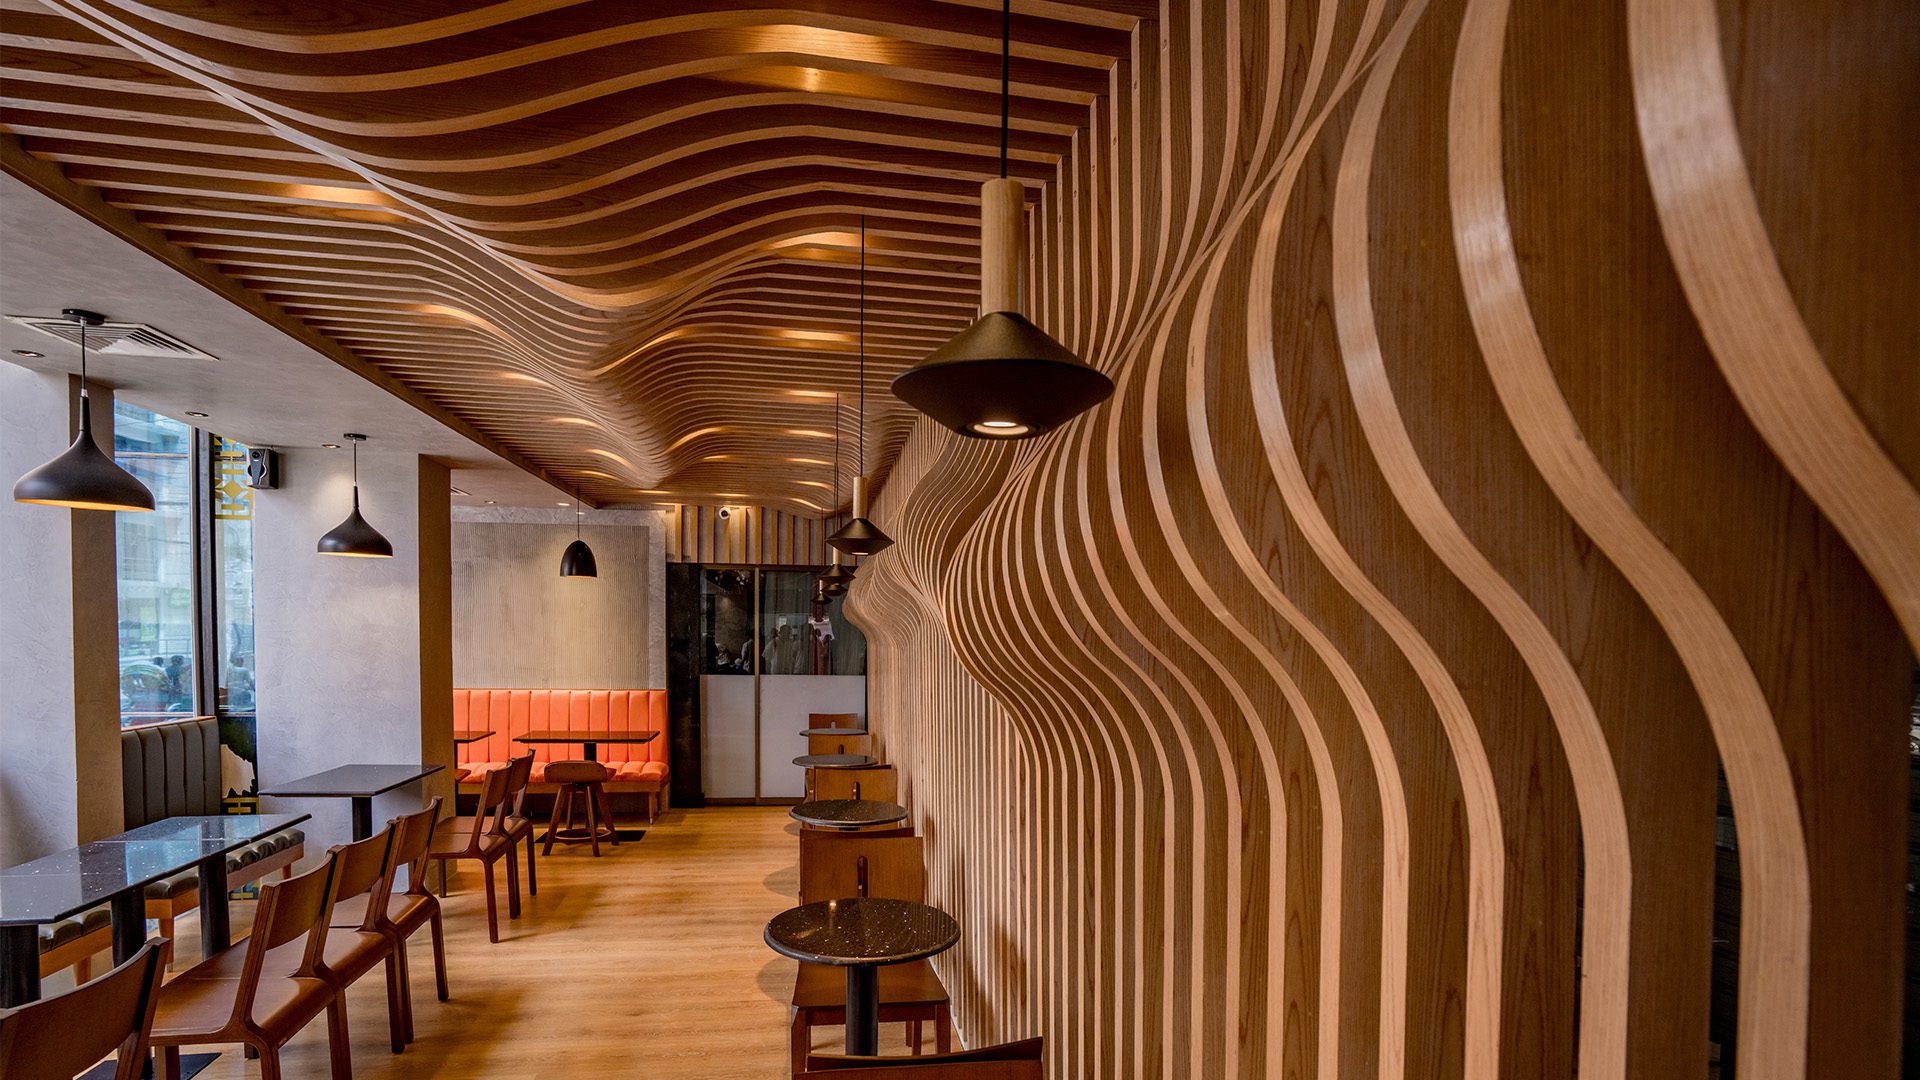 Fast food restaurant interior design